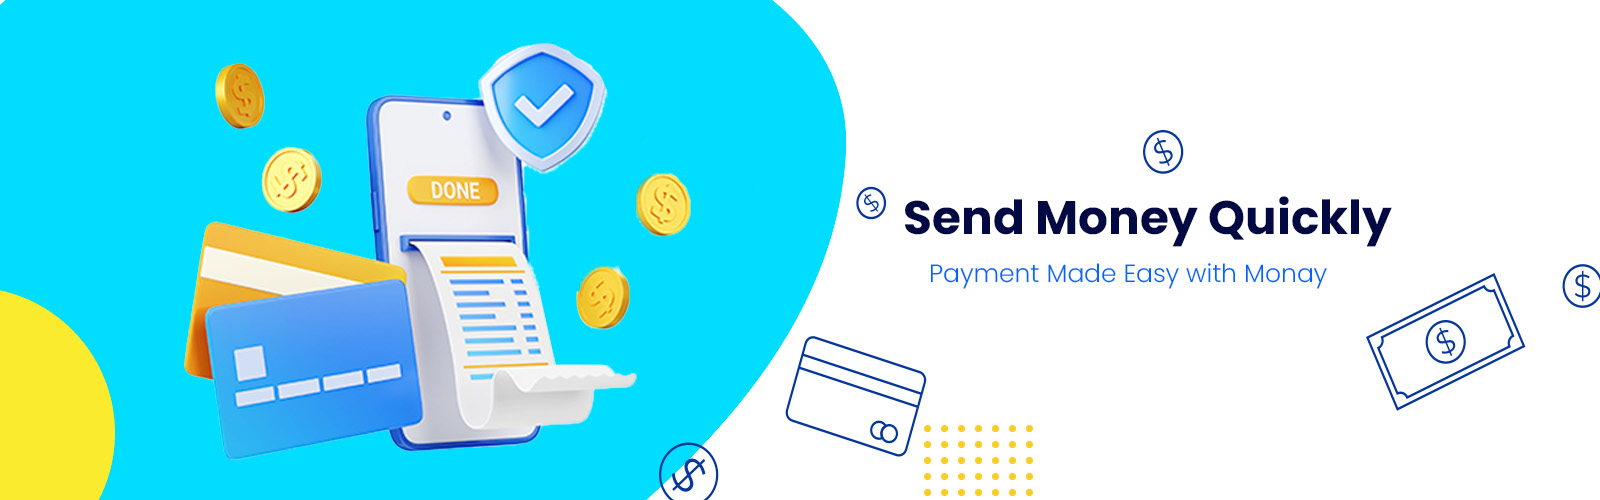 send-money-quickly-monay